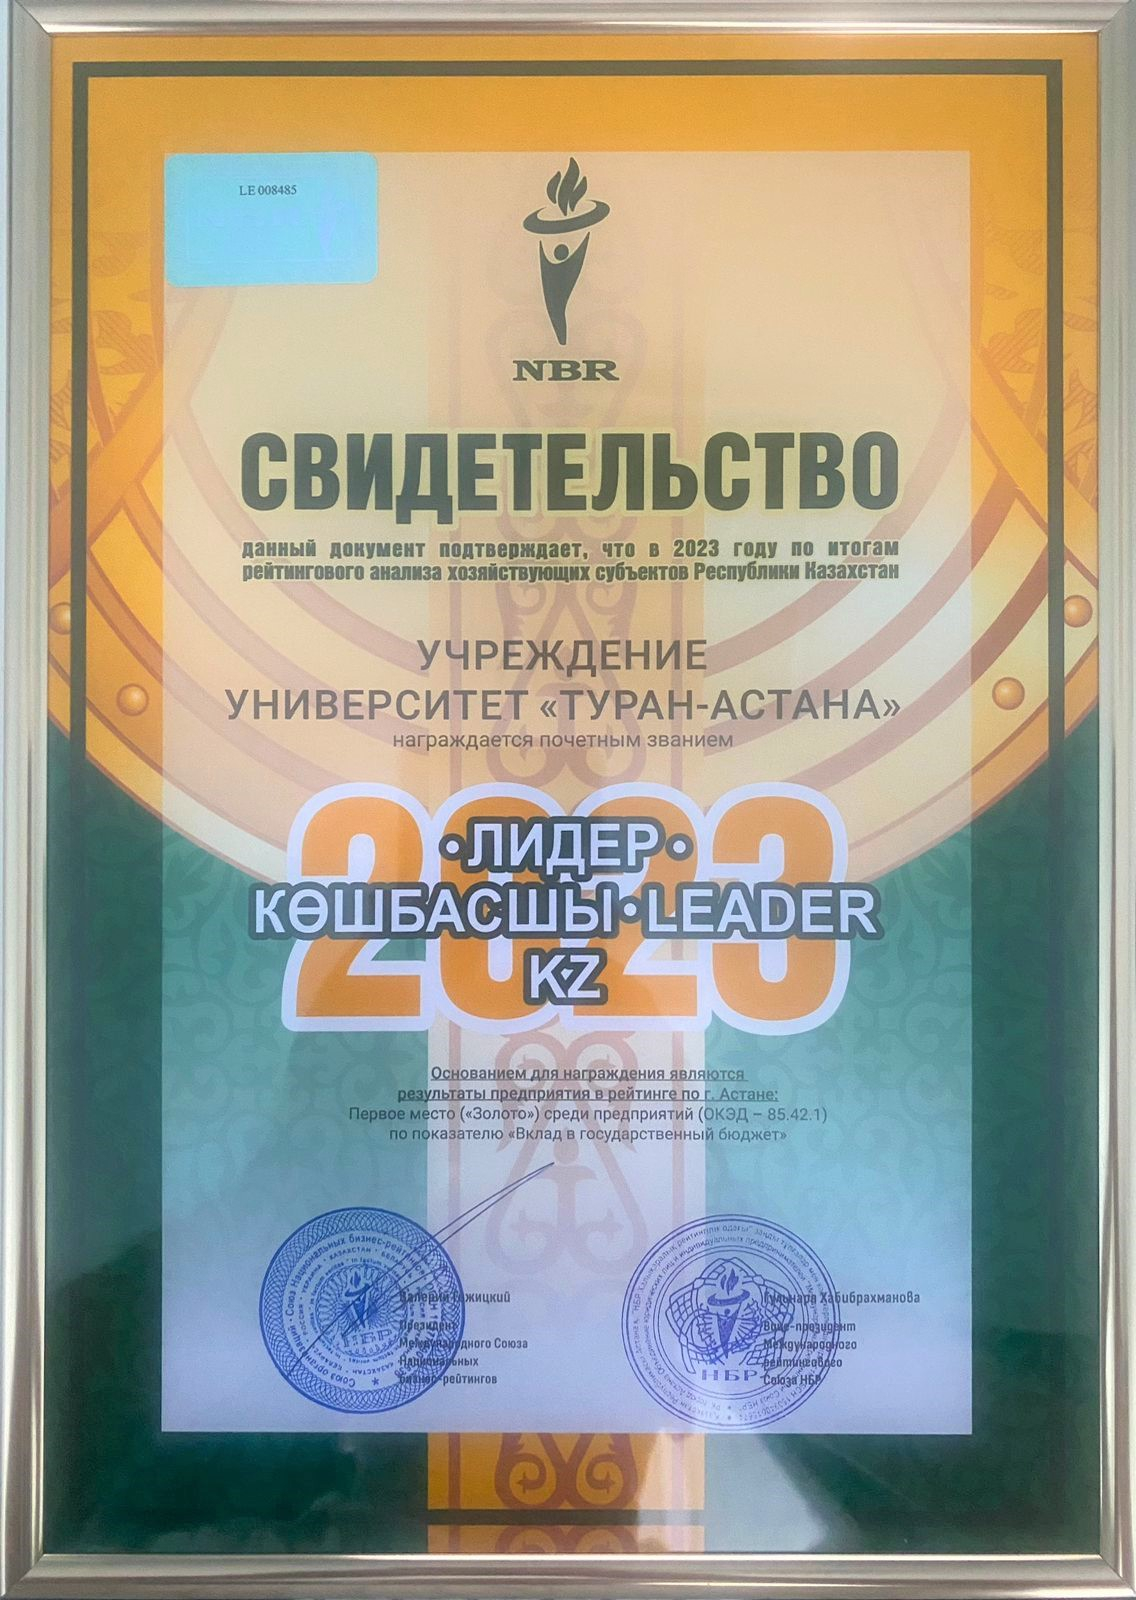 Turan-Astana University has been awarded the honorary title 'Leader-Koshbashy-Leader.KZ'